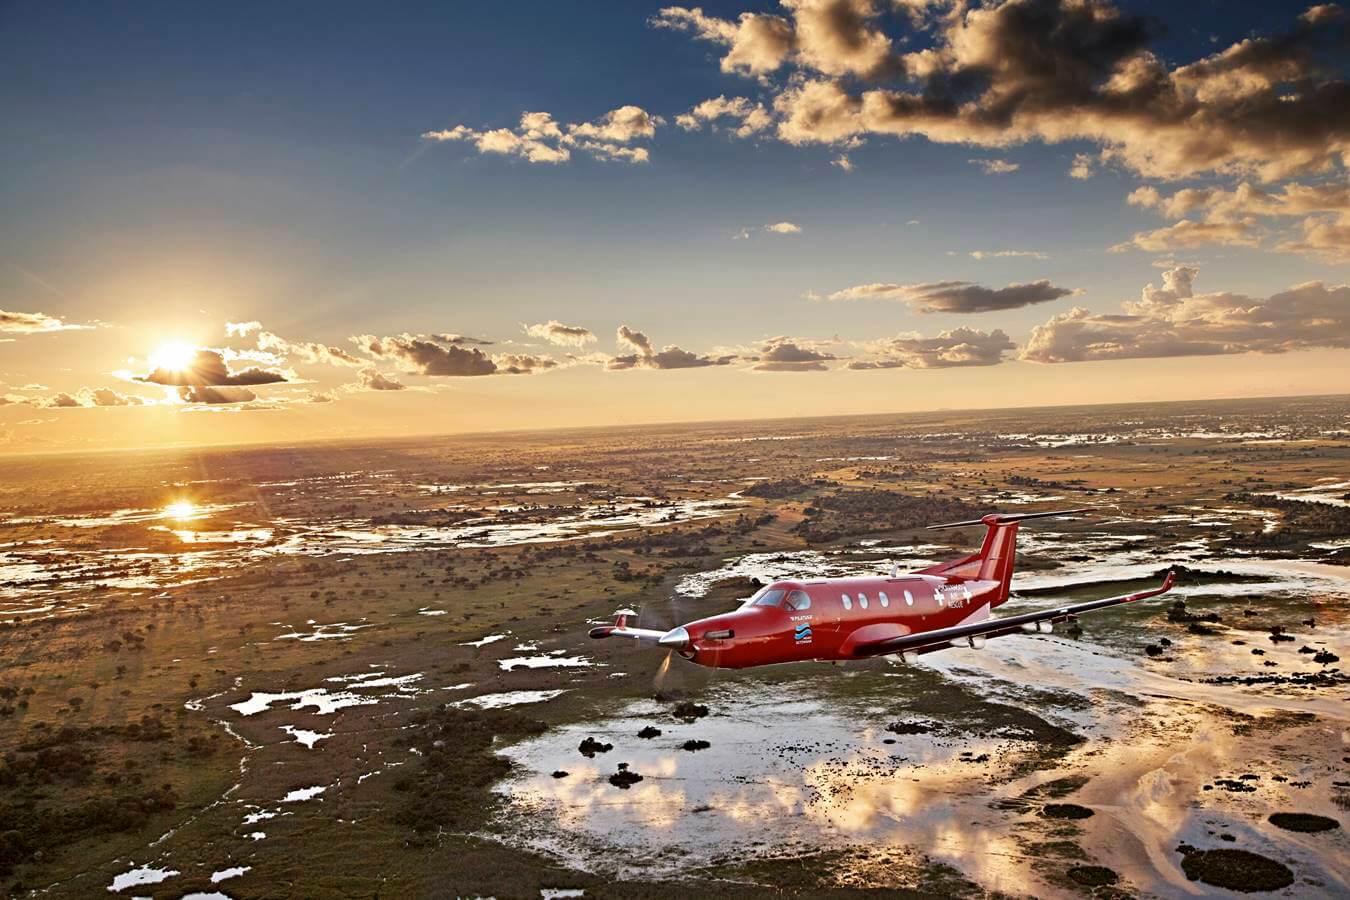 Oris Big Crown ProPilot Okavango Air Rescue Limited Edition - ahoj przygodo!